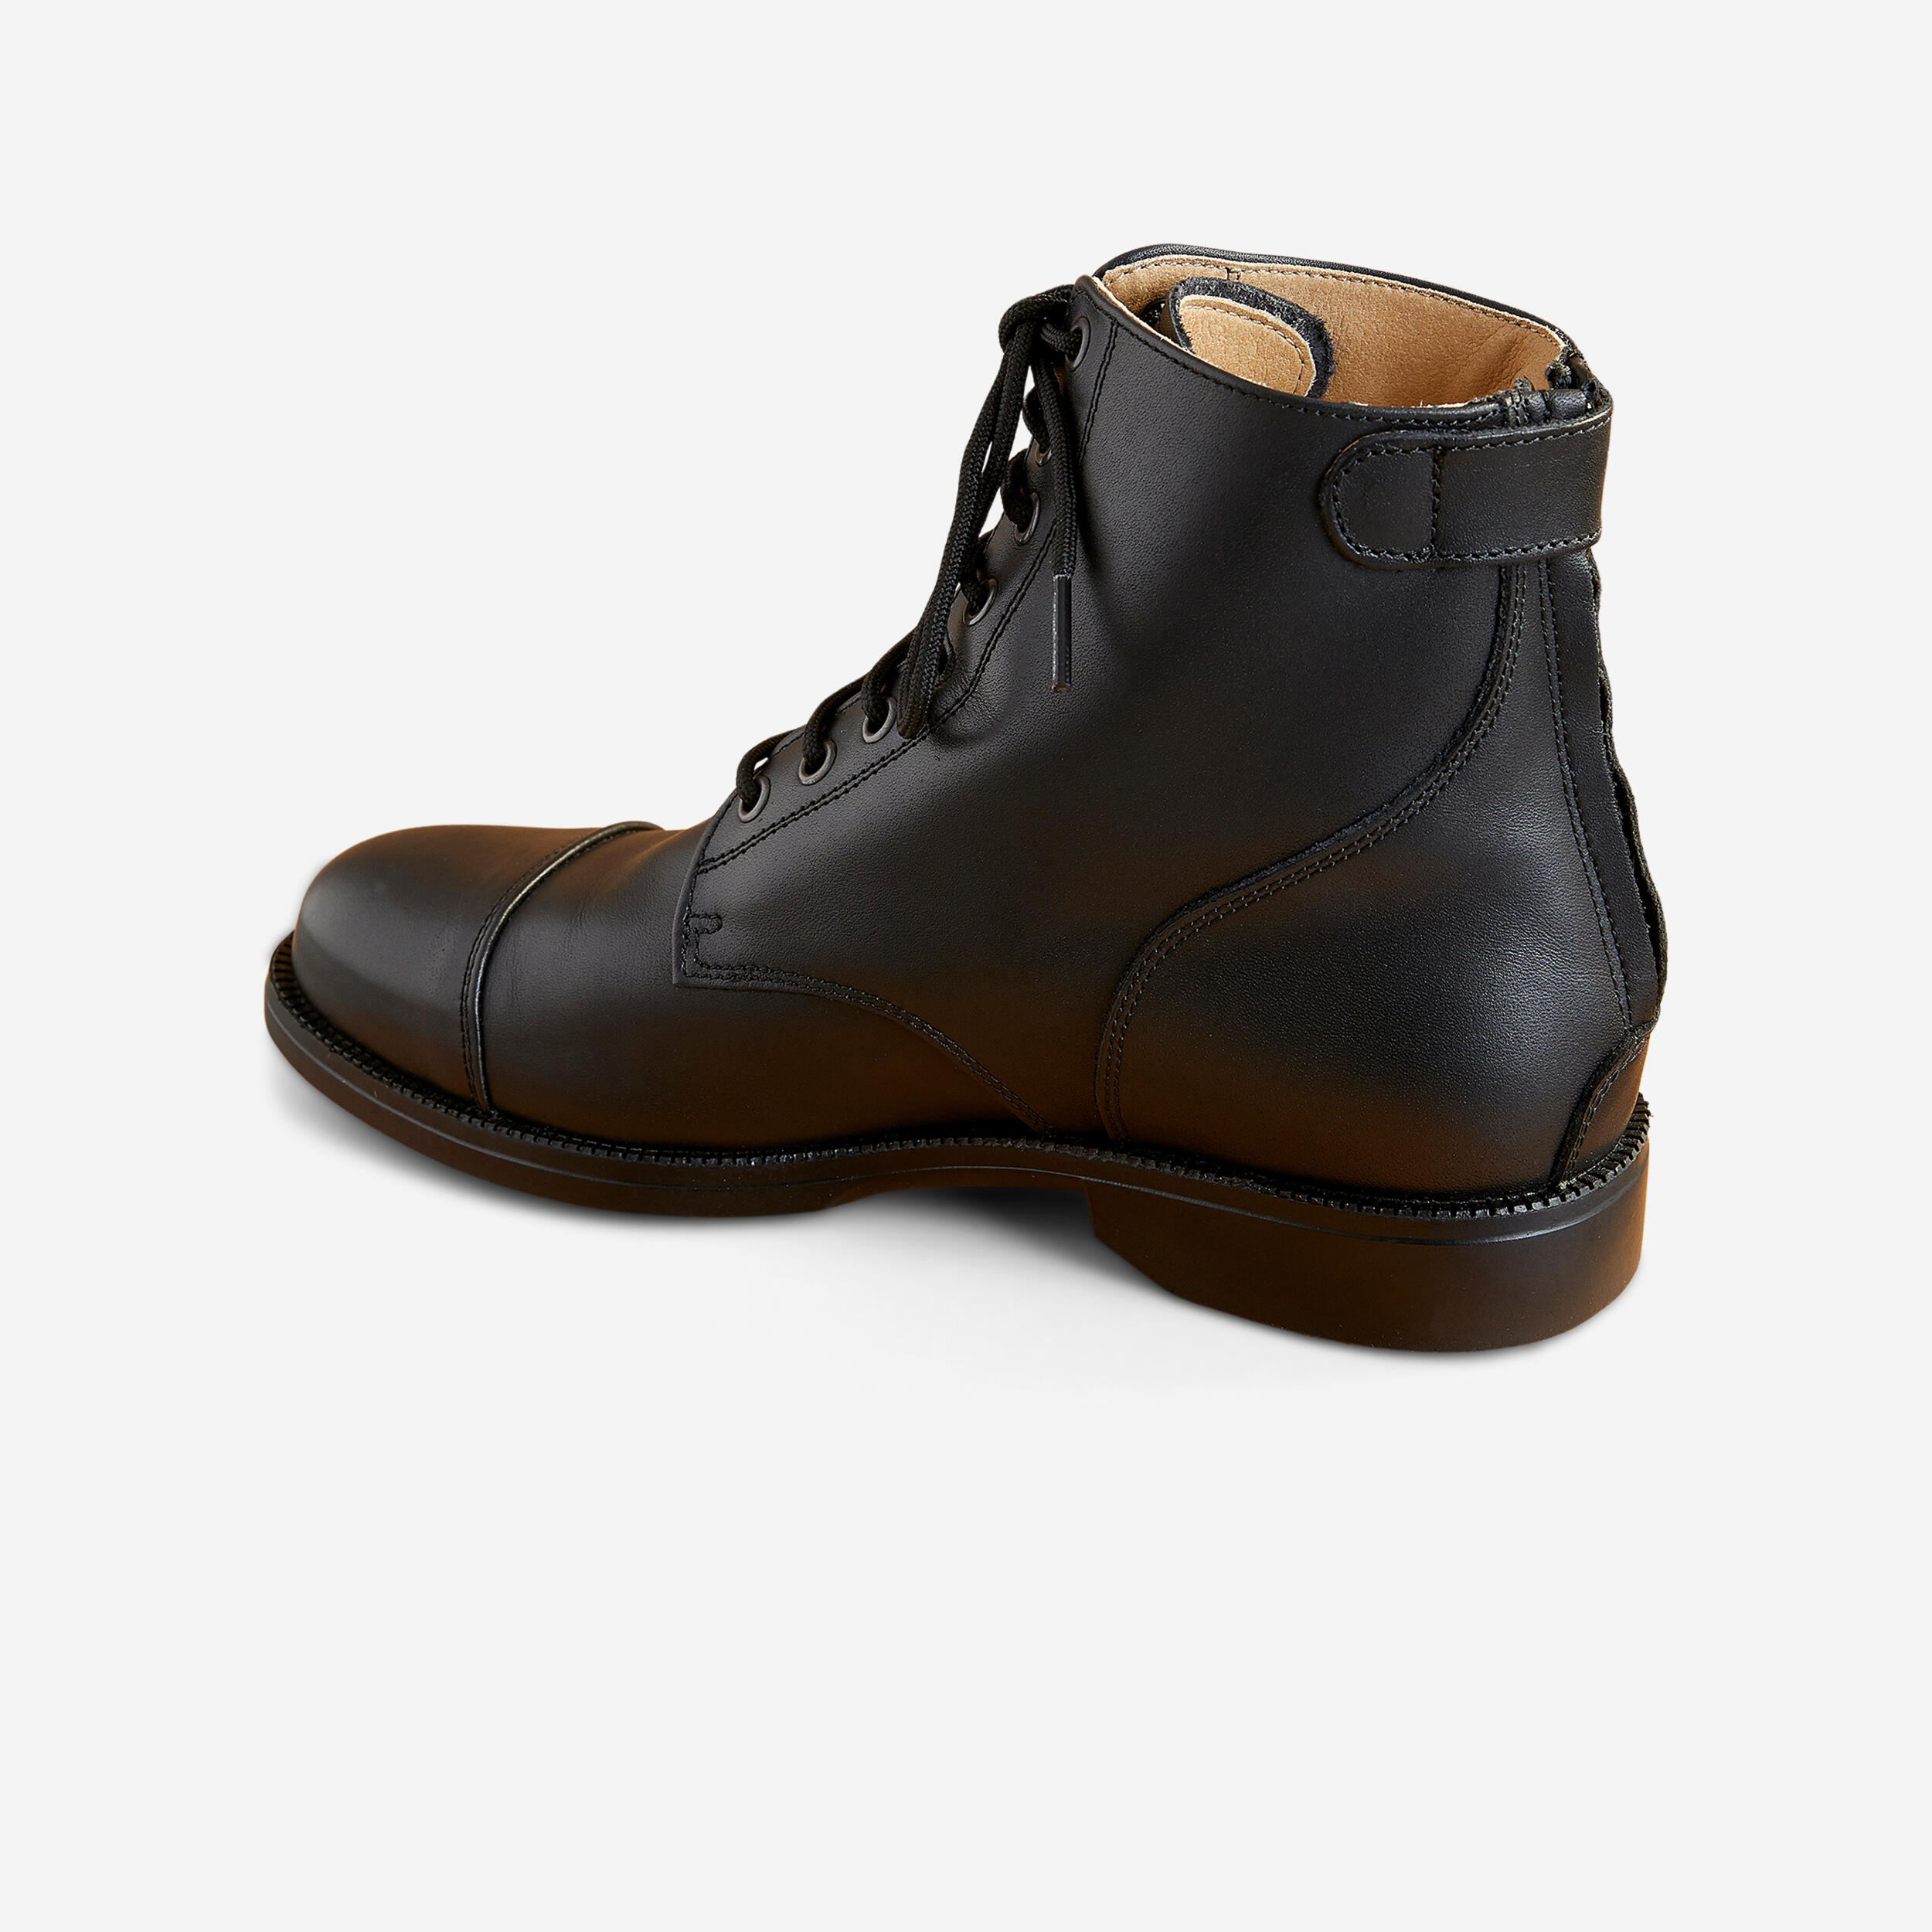 boots équitation cuir paddock lacets adulte - 560 noires - fouganza